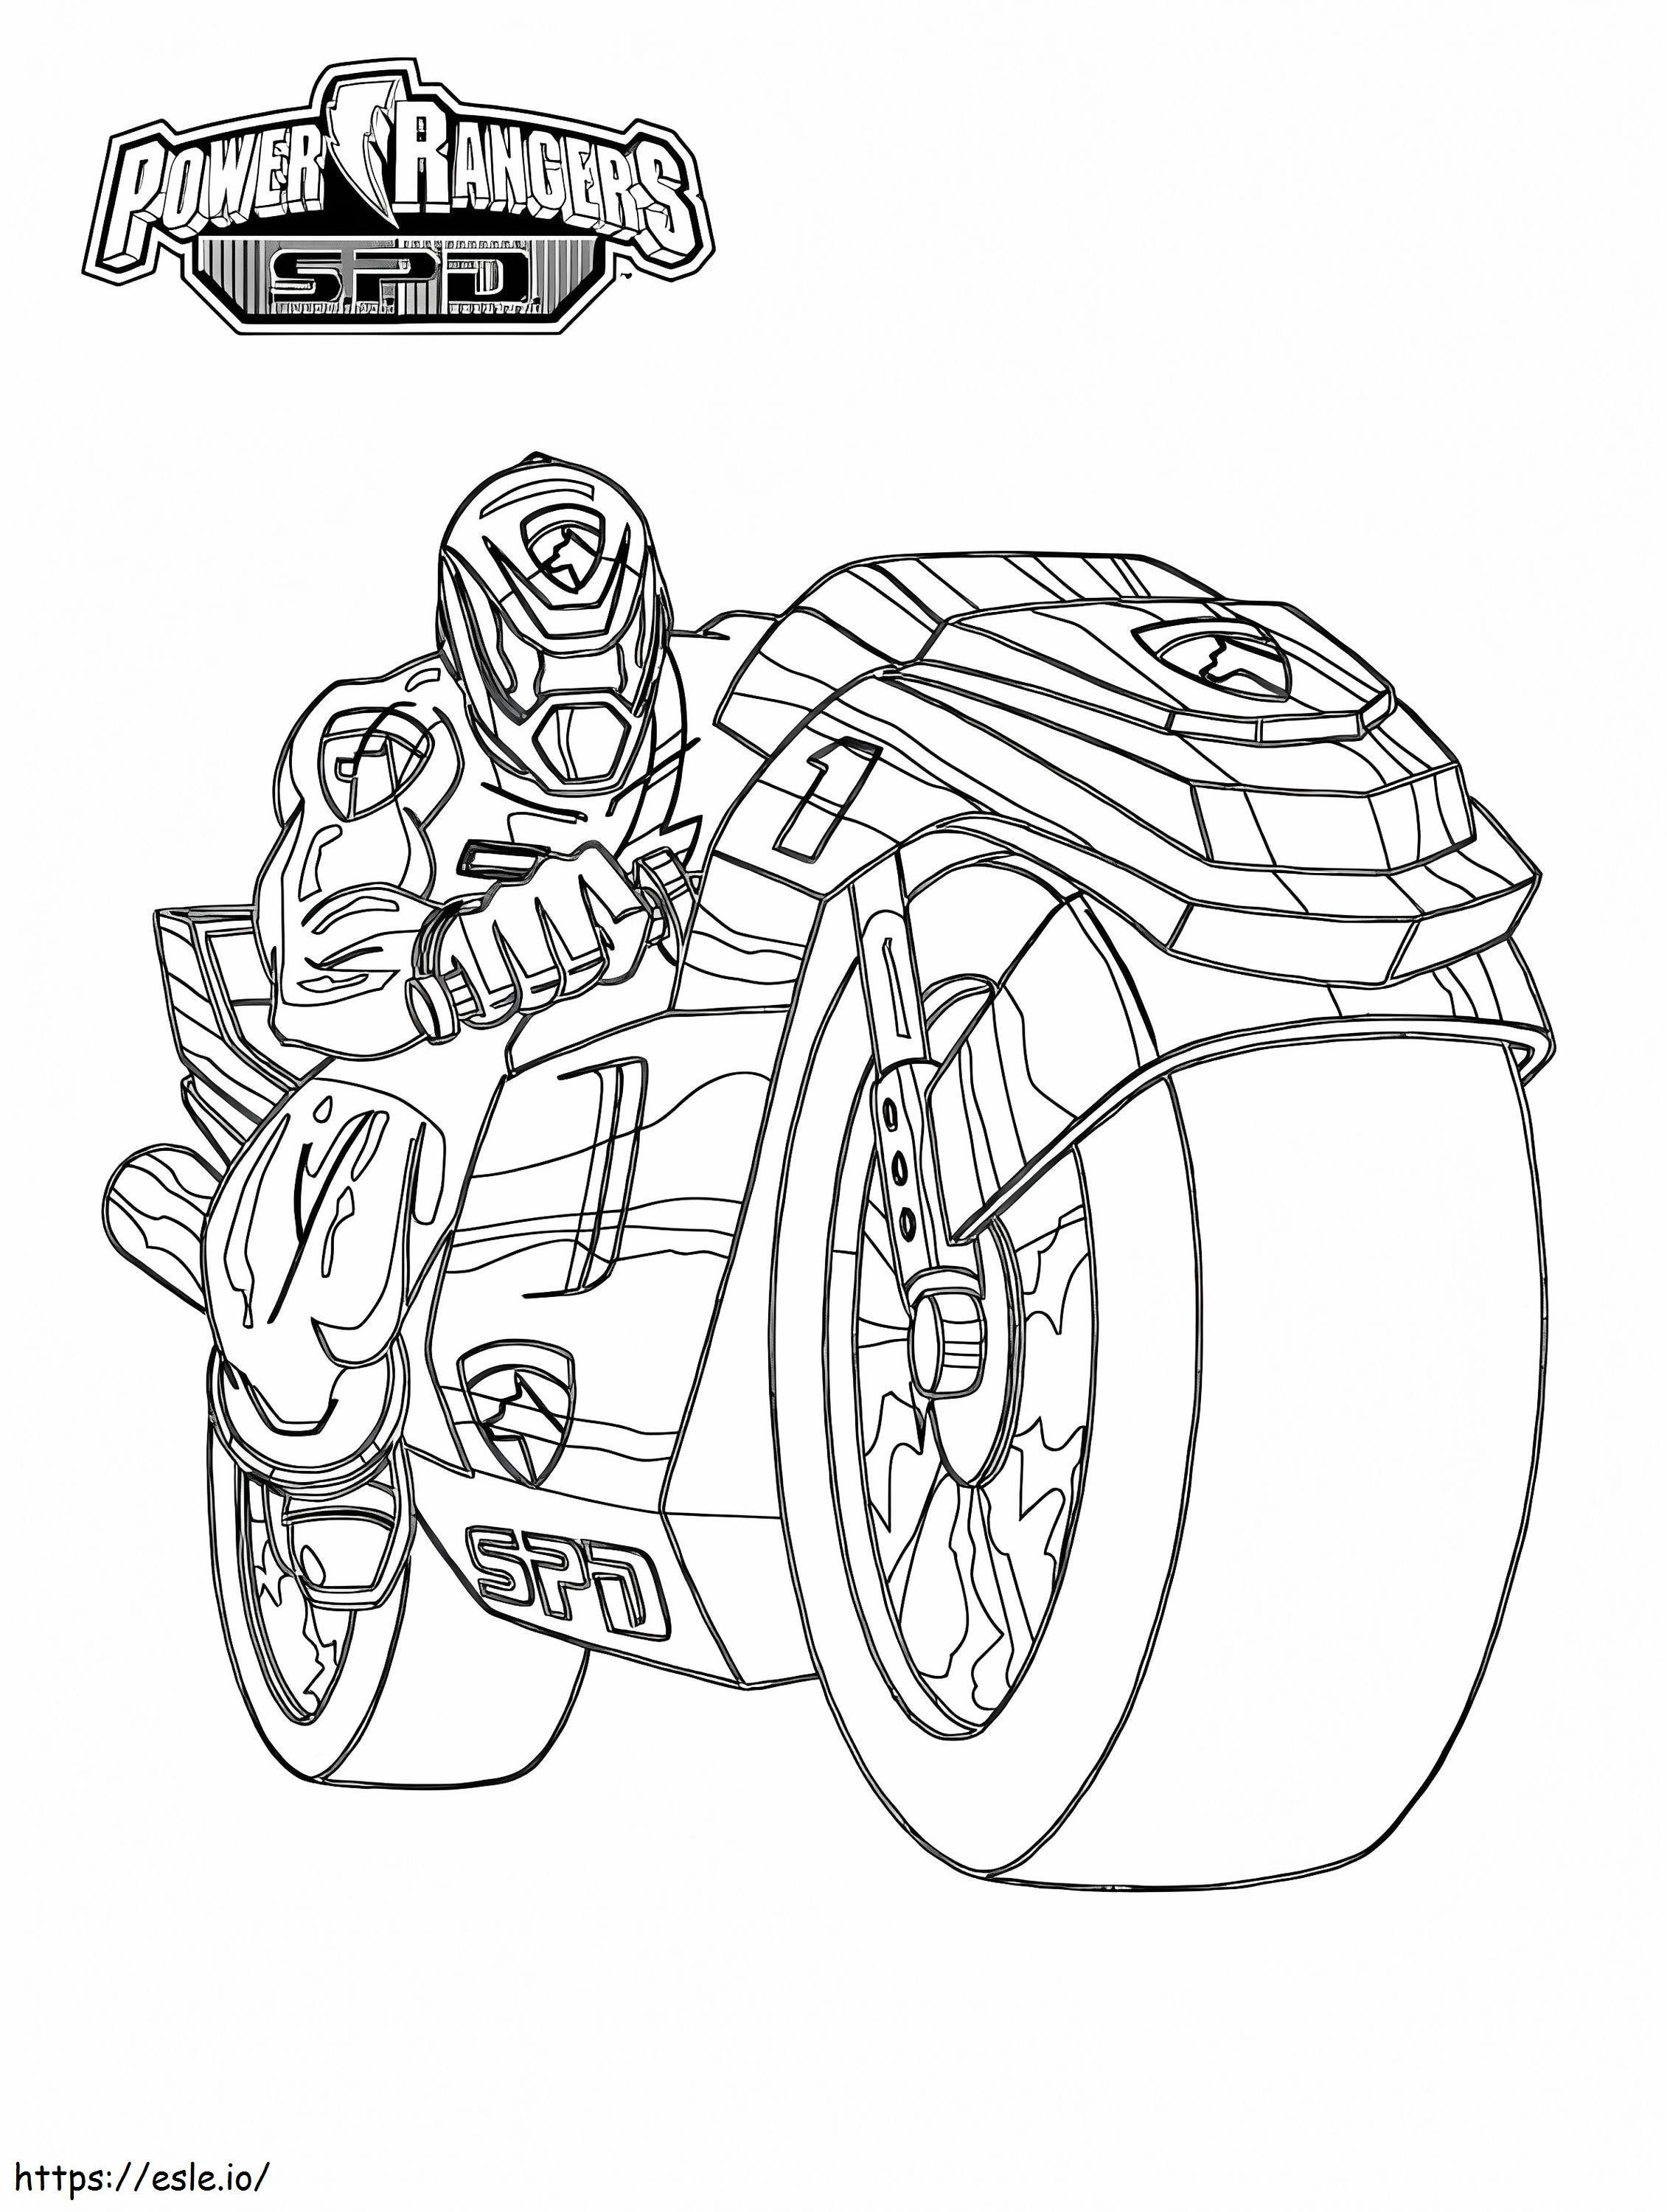 Coloriage Power Ranger SPD à imprimer dessin